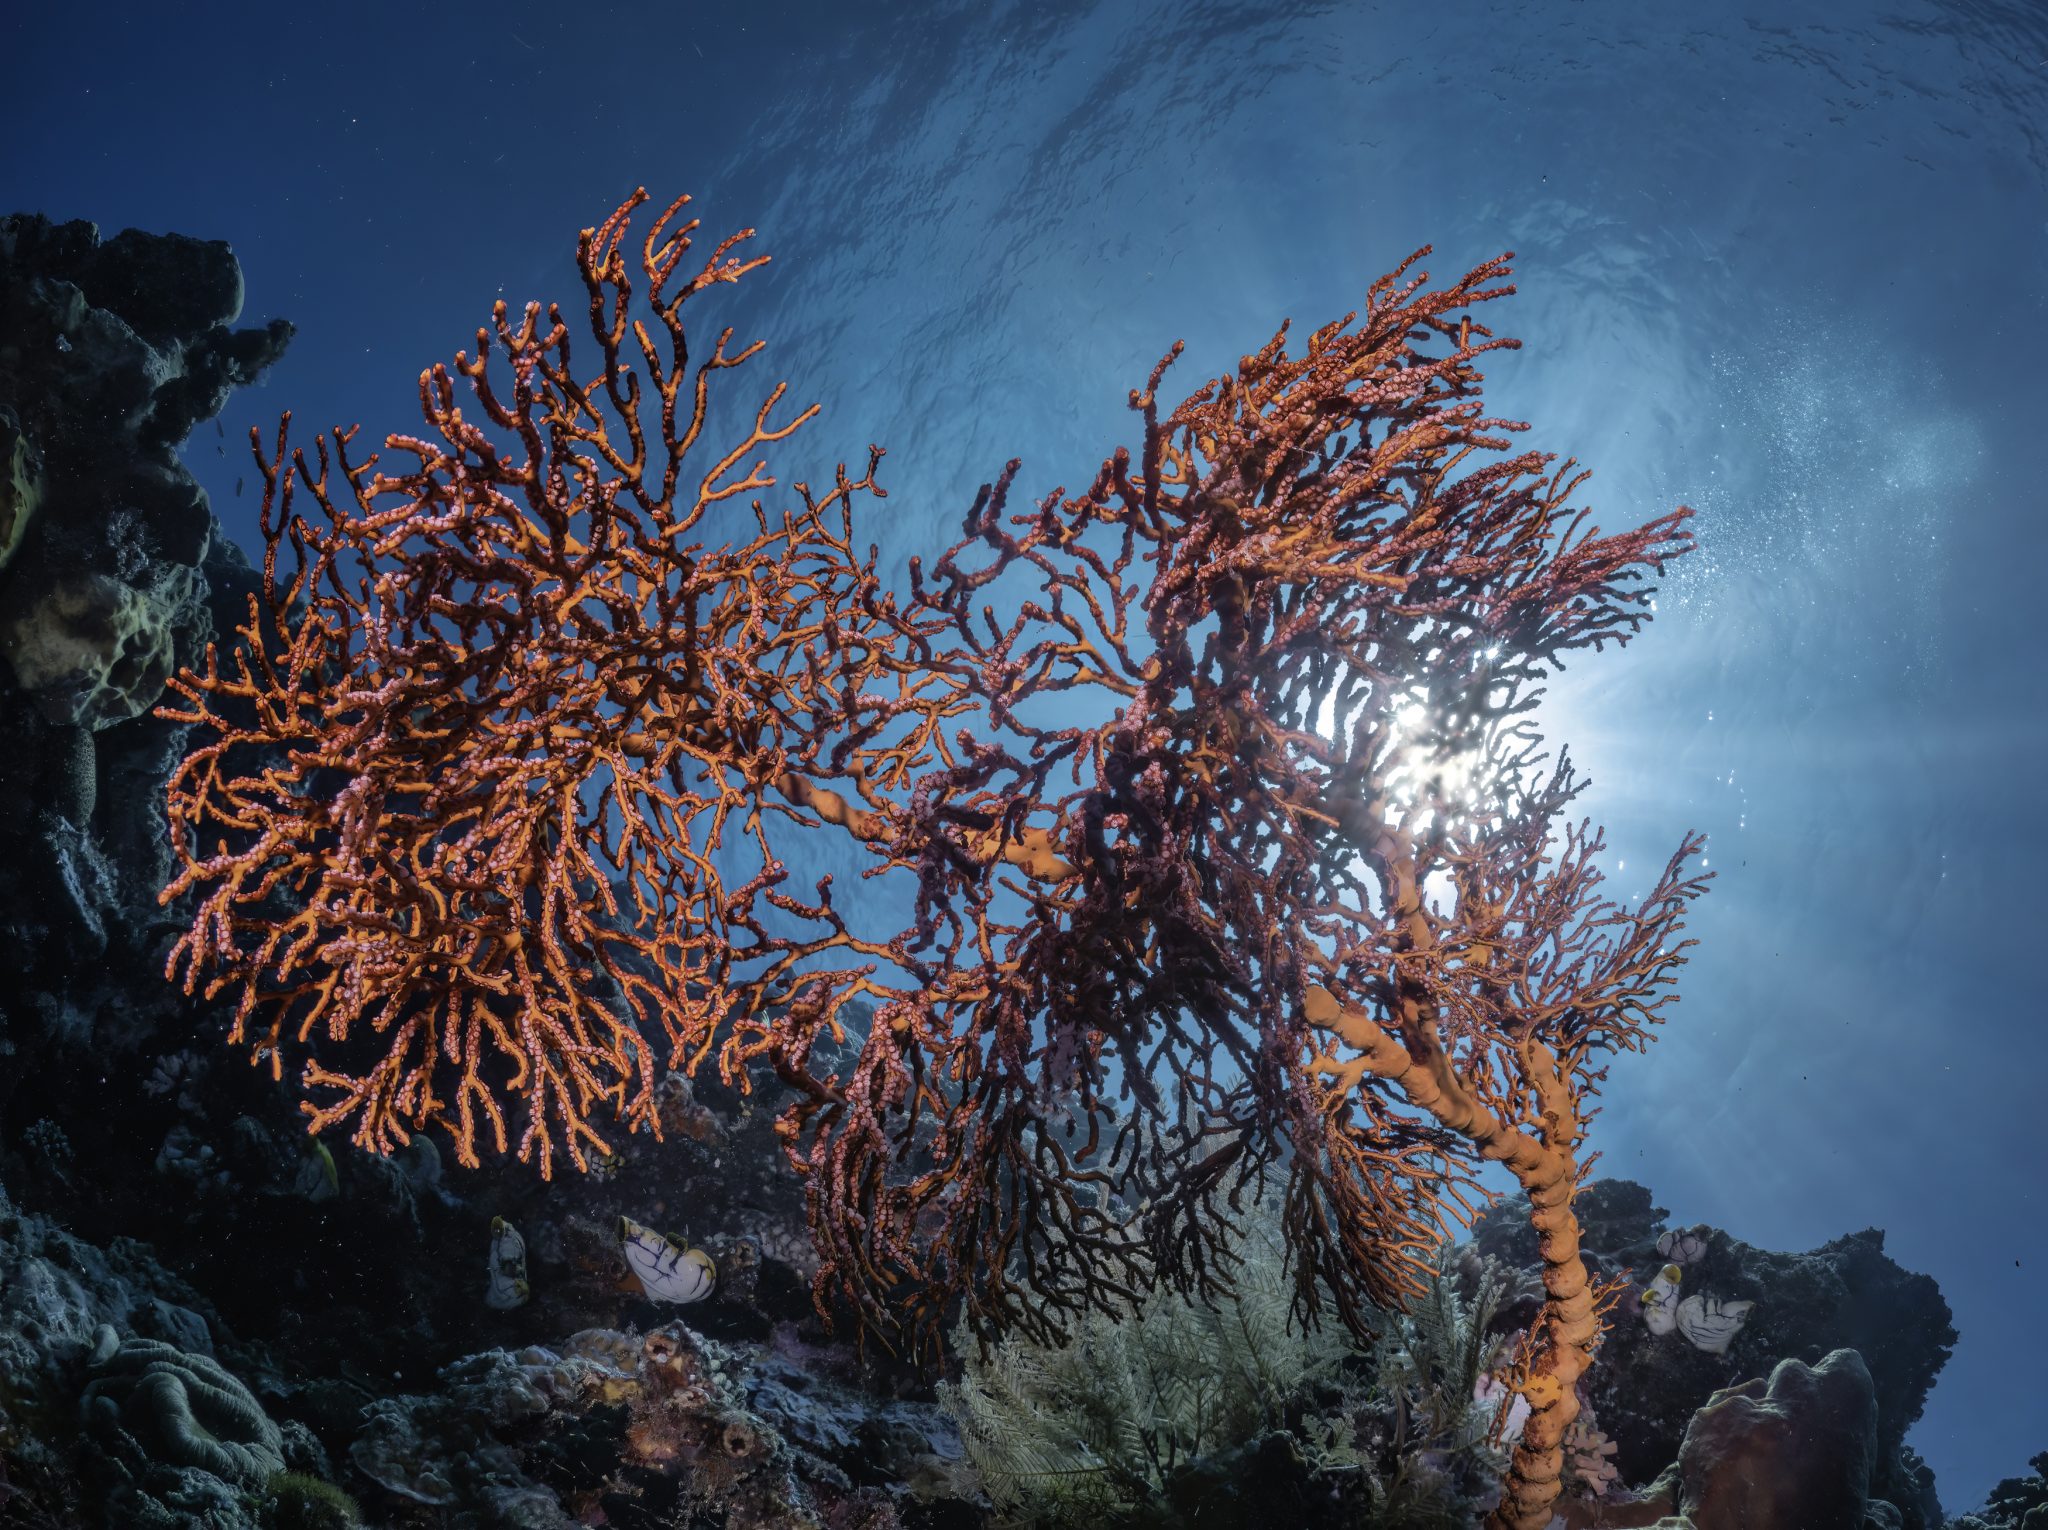 underwater photography workshop